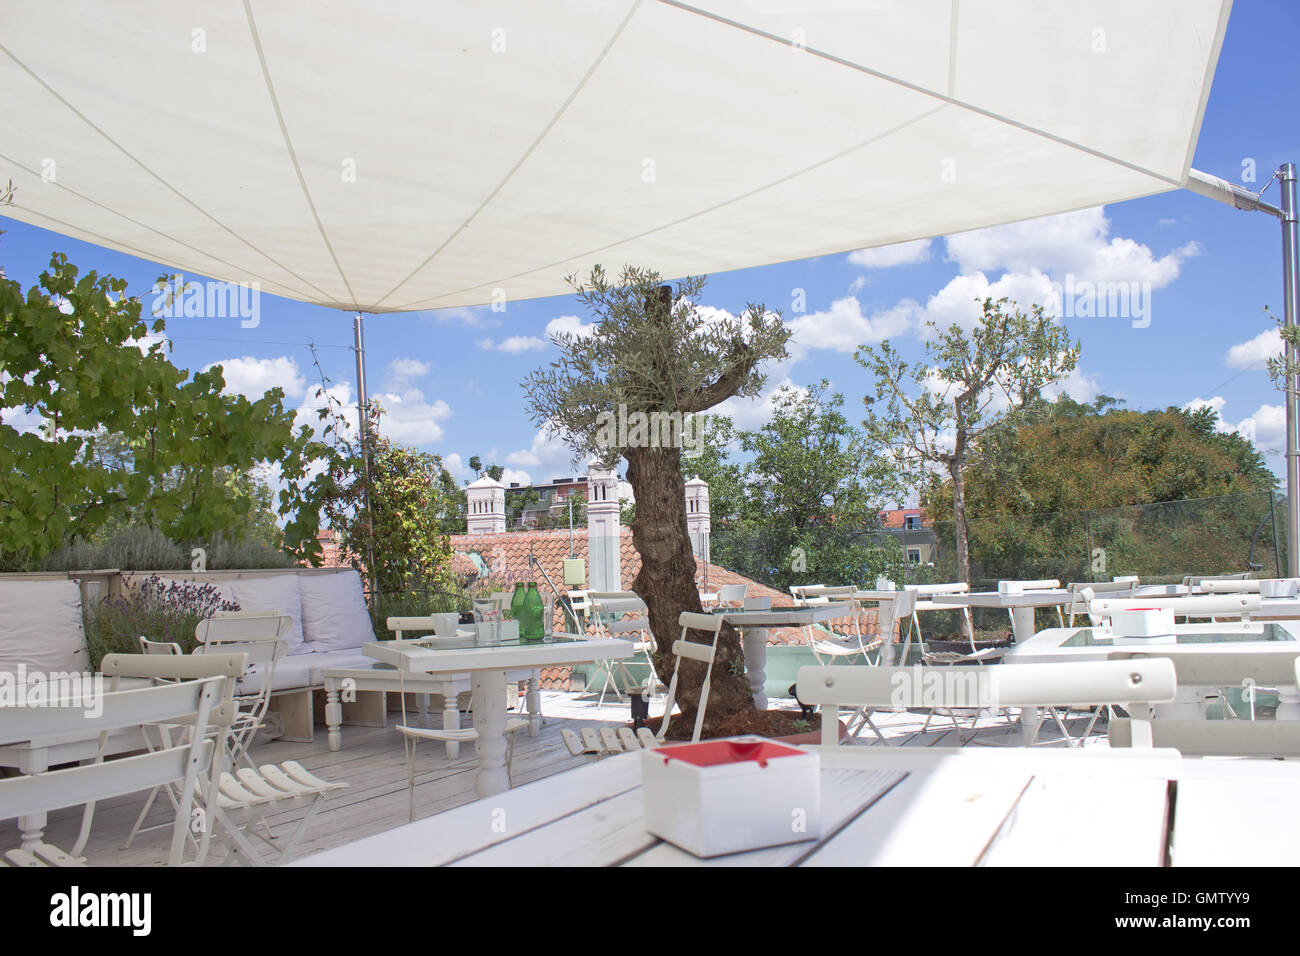 Restaurant en plein air, sur le toit terrasse avec parasol Banque D'Images